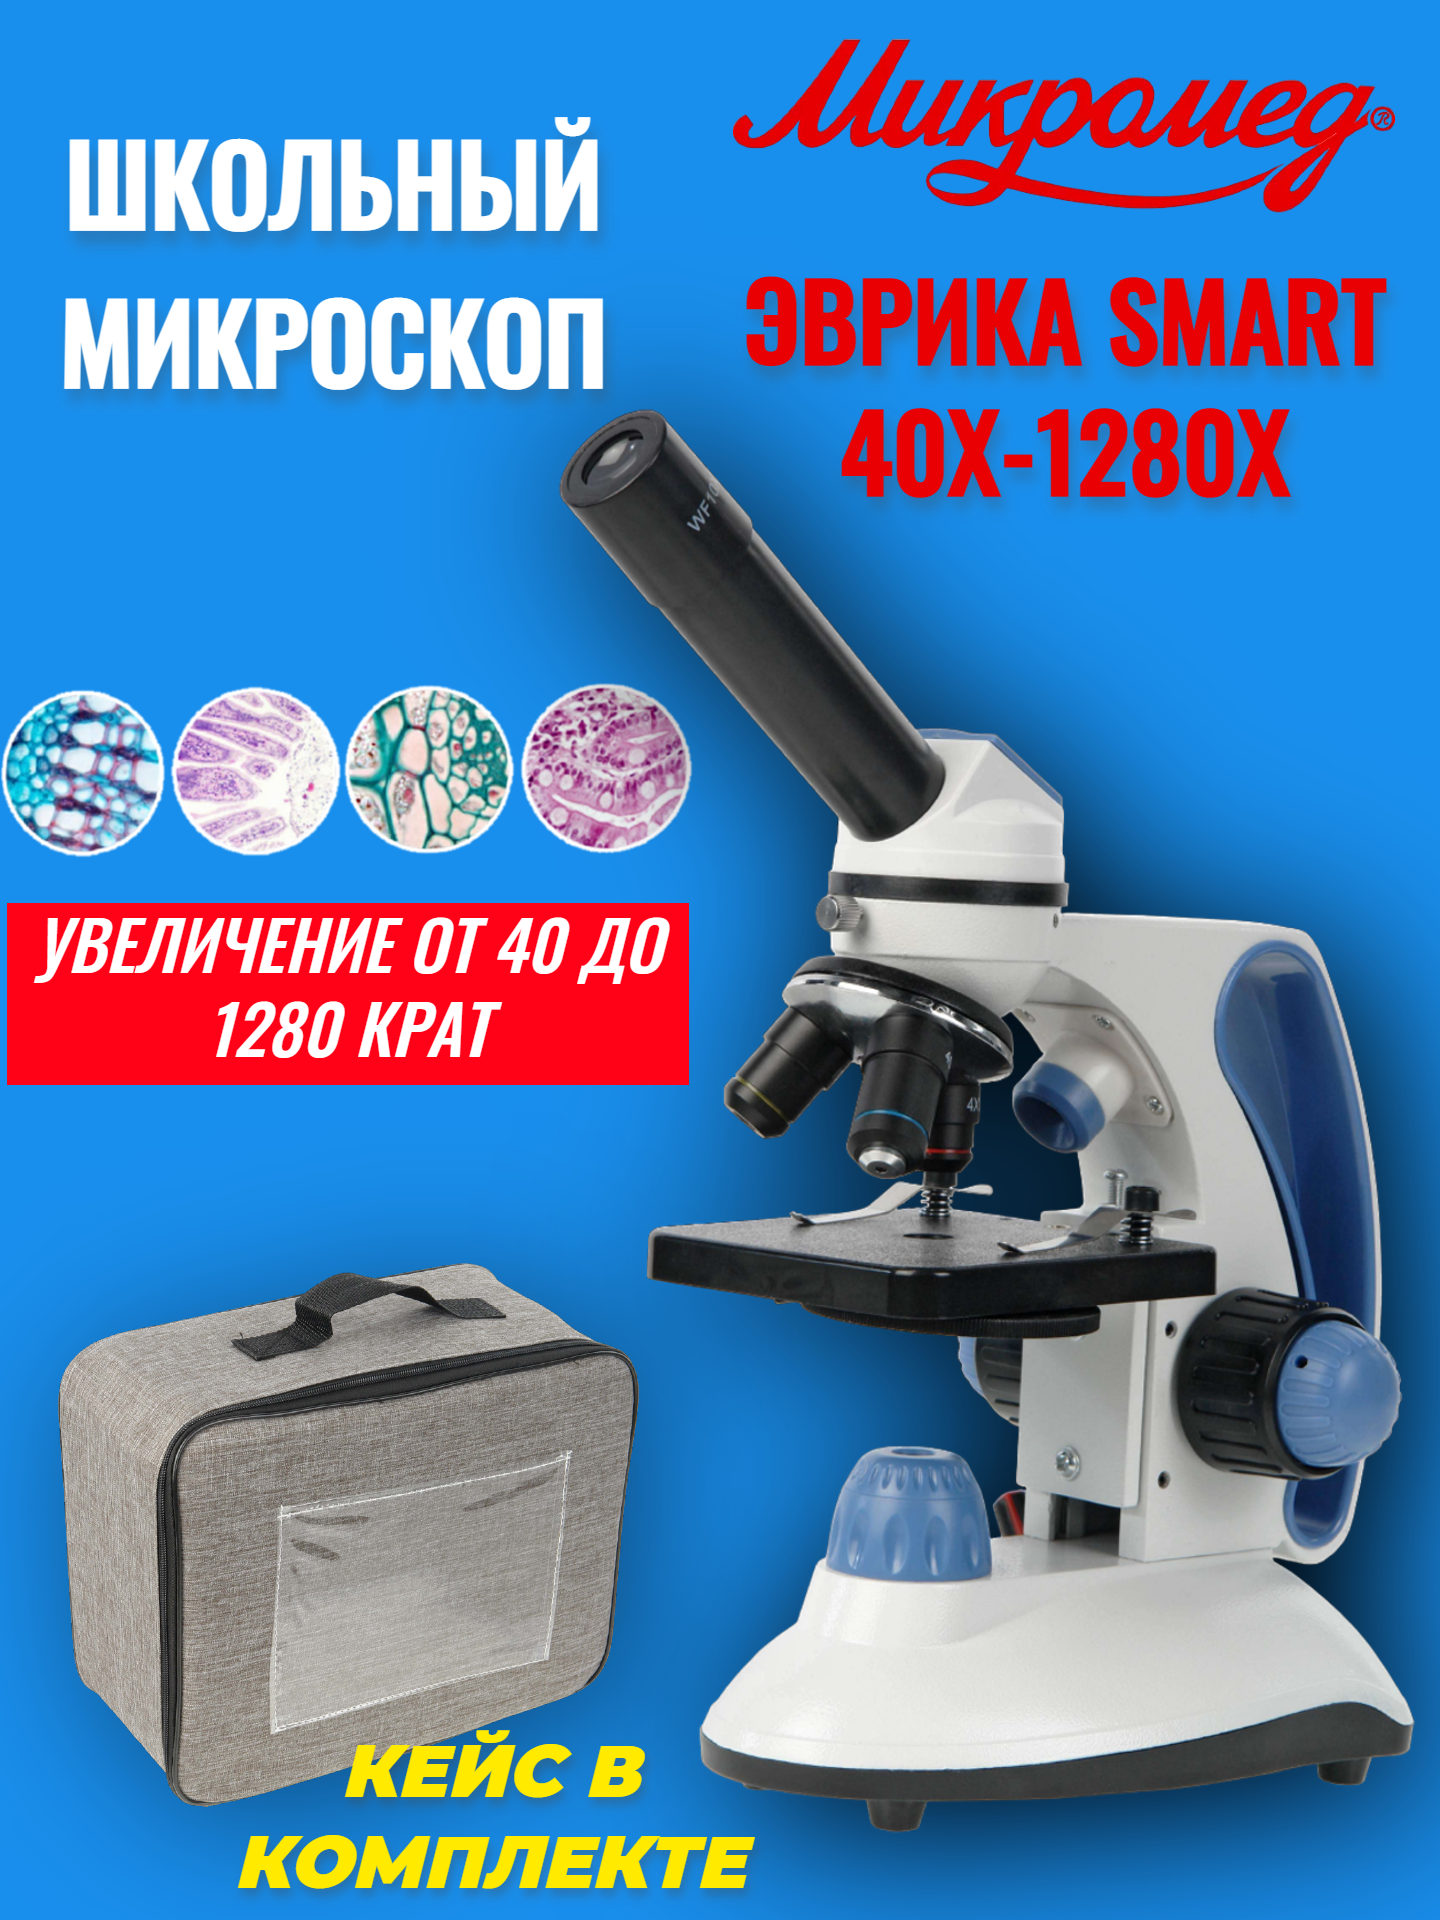 Микроскоп школьный учебный Микромед Эврика SMART 40х-1280х в текстильном кейсе